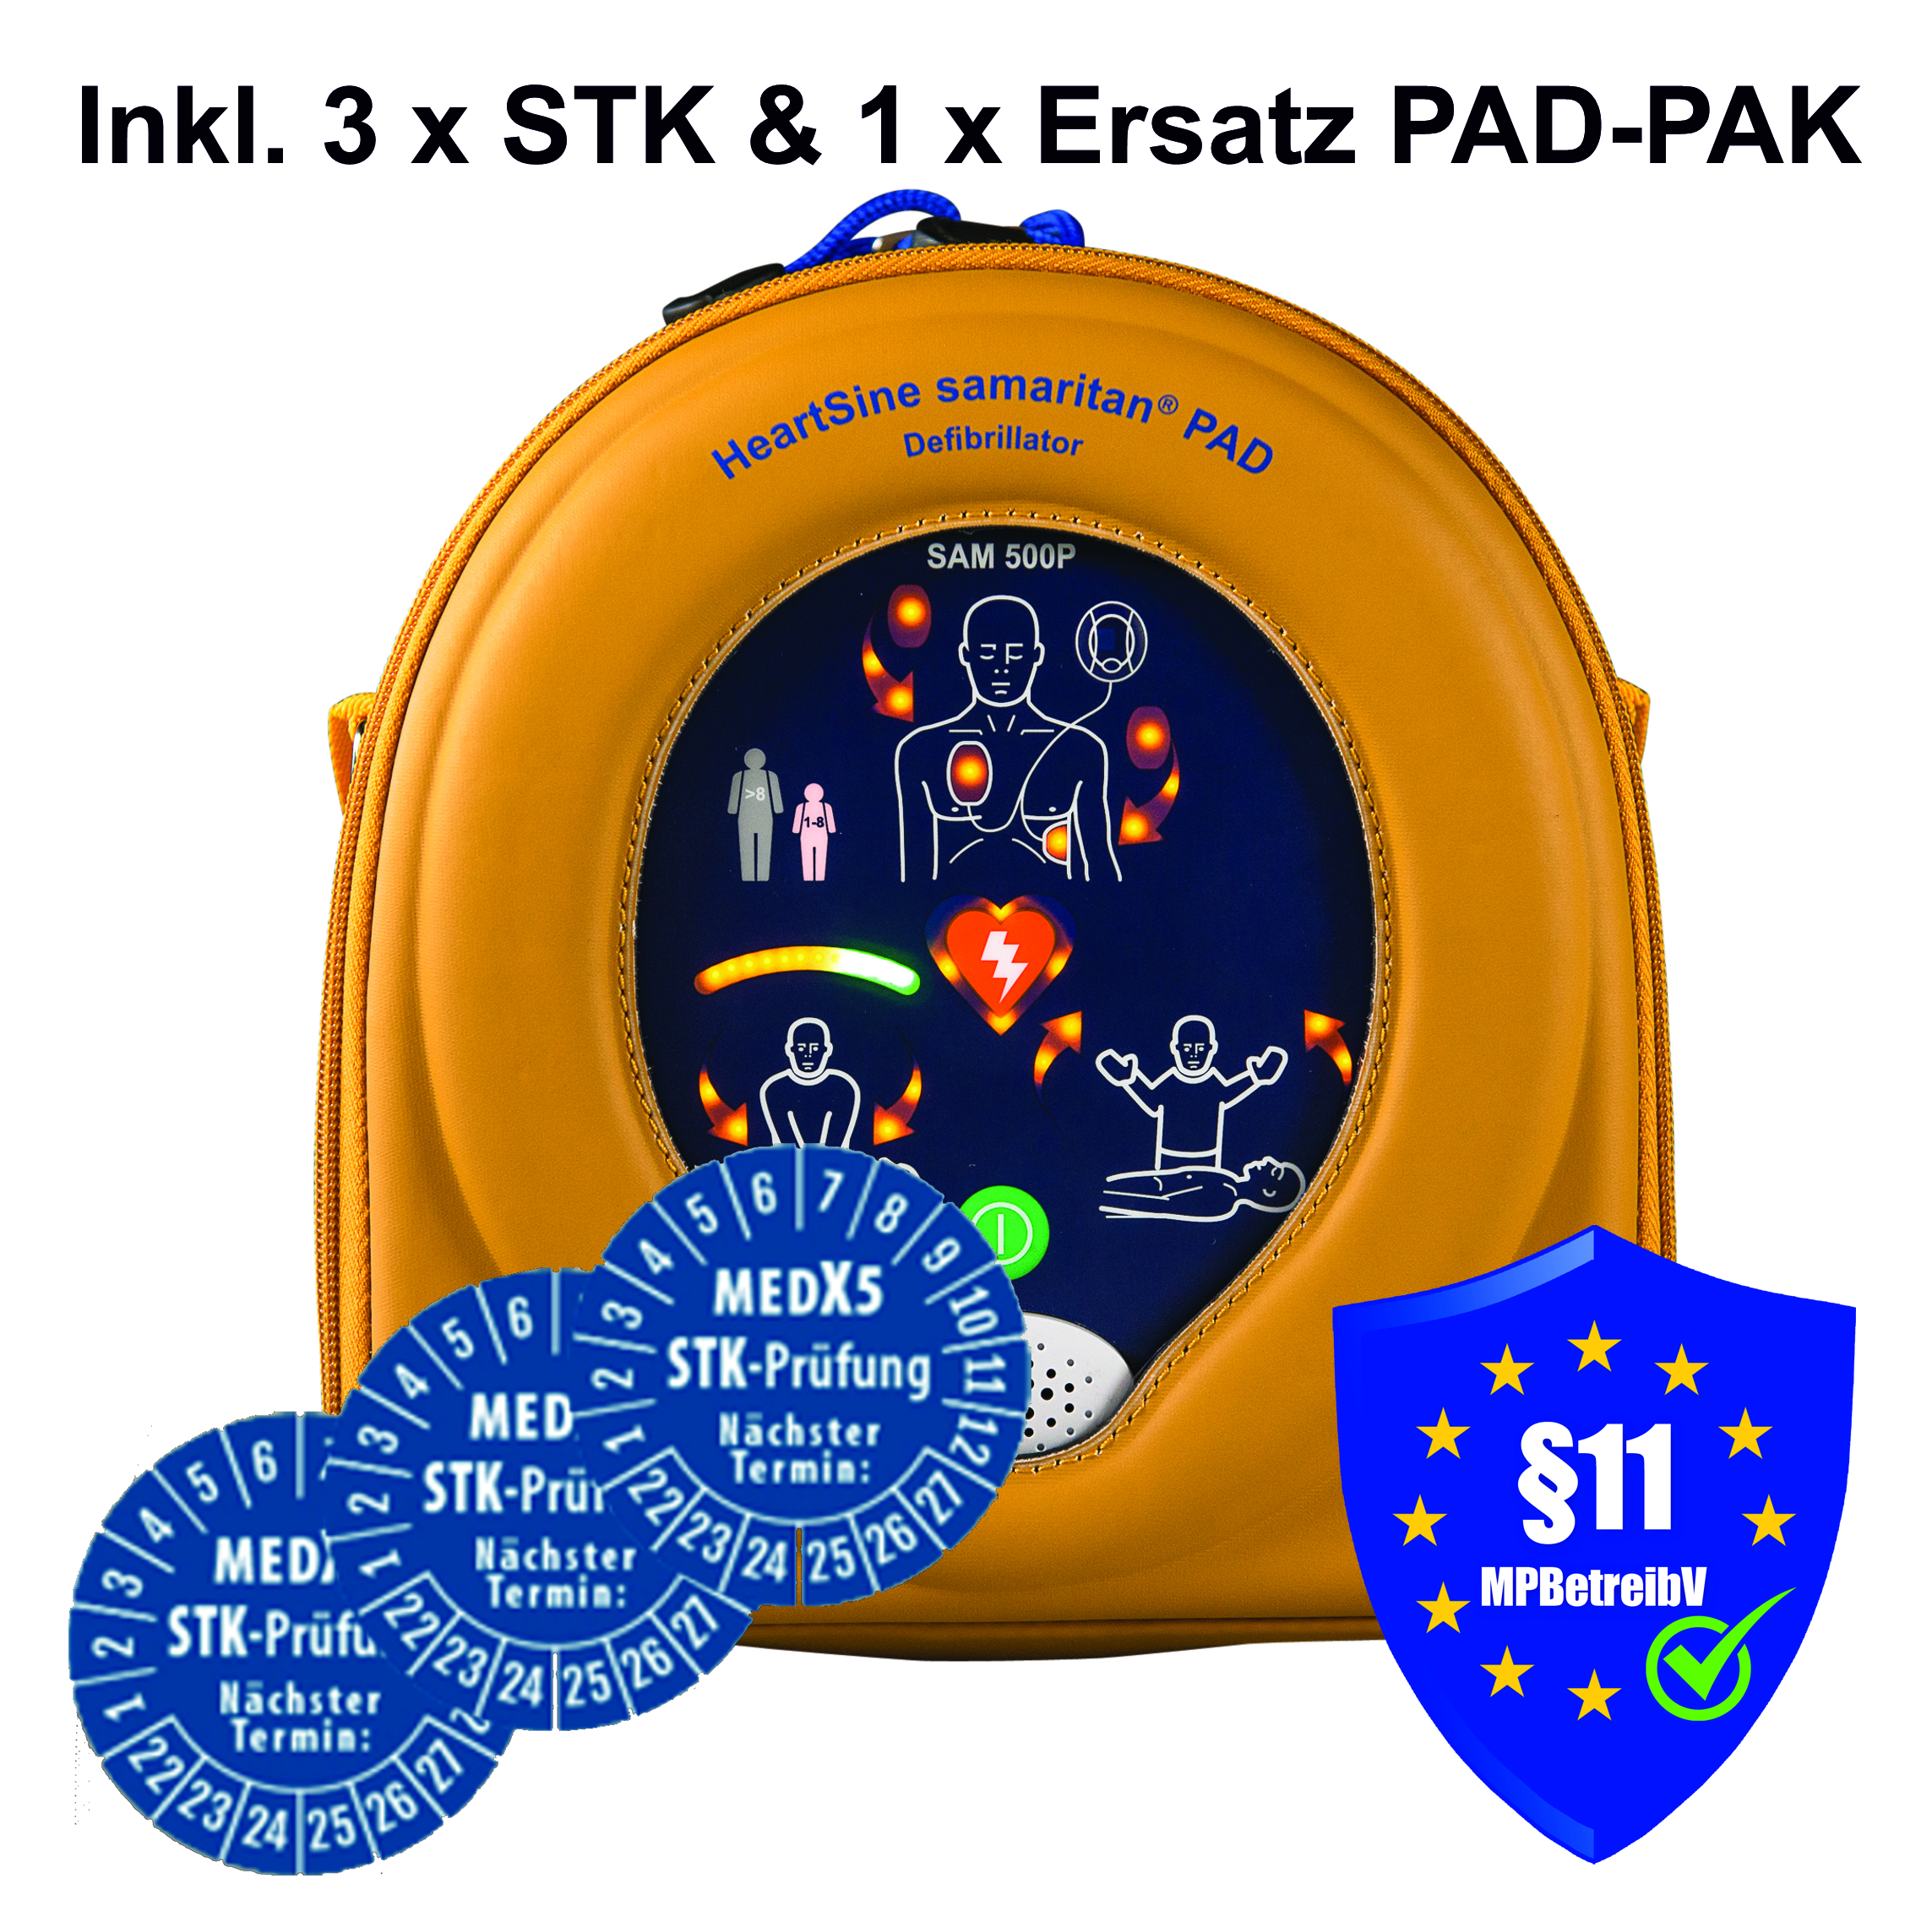 HeartSine samaritan® PAD 500P AED Reanimations-Defibrillator, inkl. 3 St. STK-Prüfungen und 1 St. PAD-PAK innerhalb der Garantiezeit